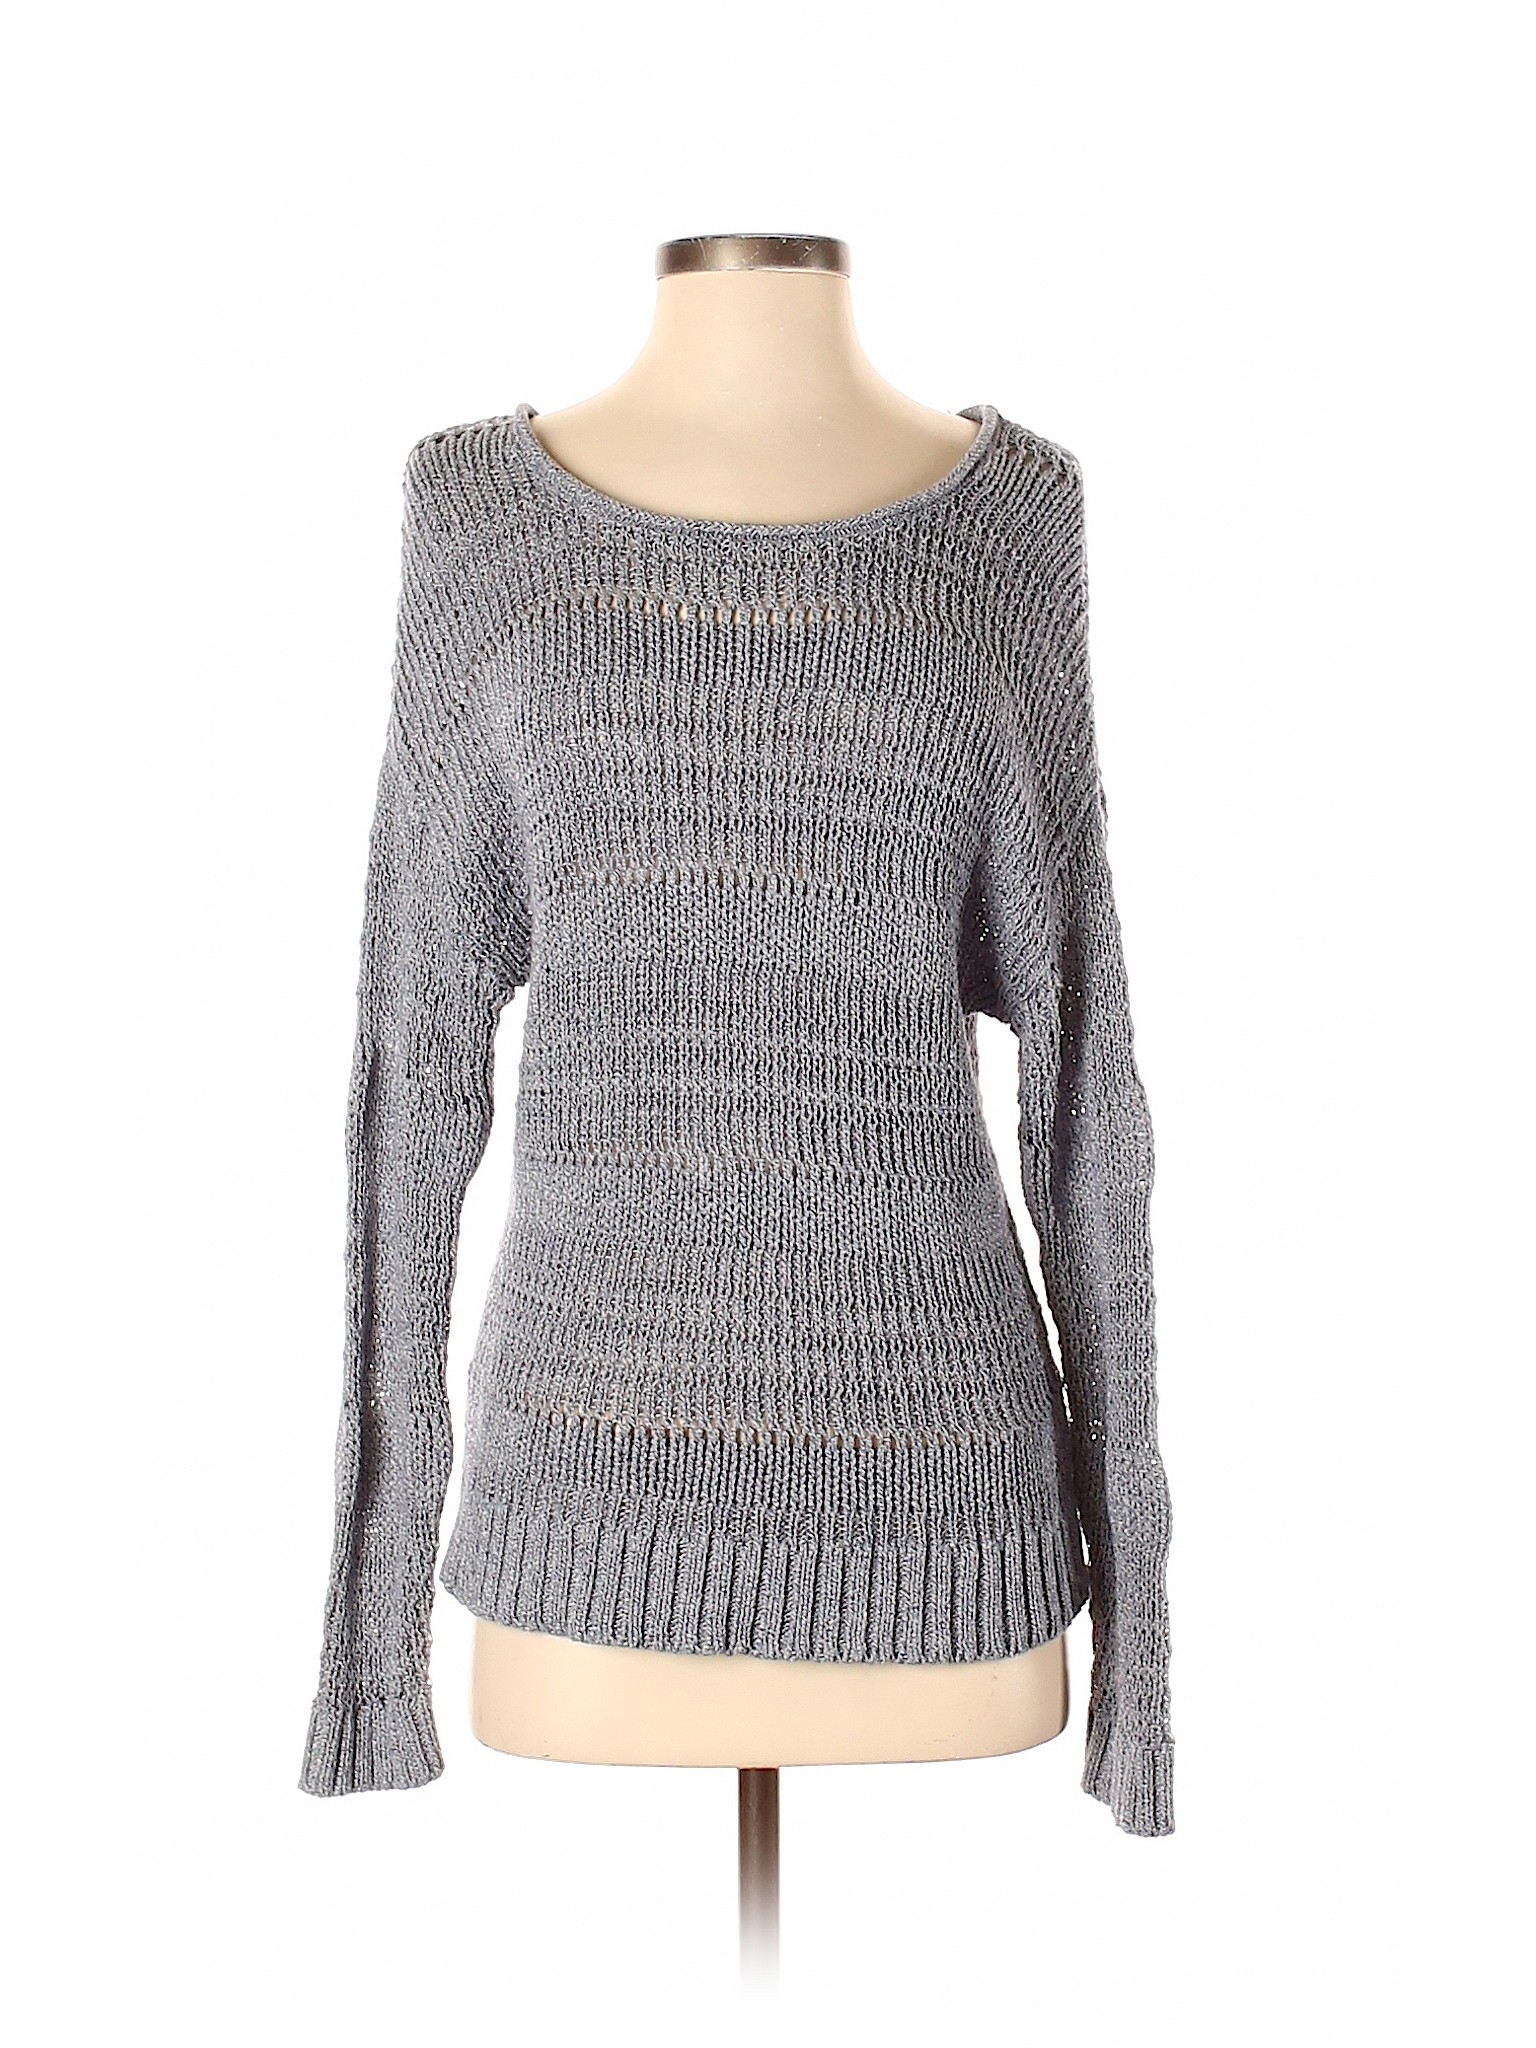 Gap Women Blue Pullover Sweater XS | eBay